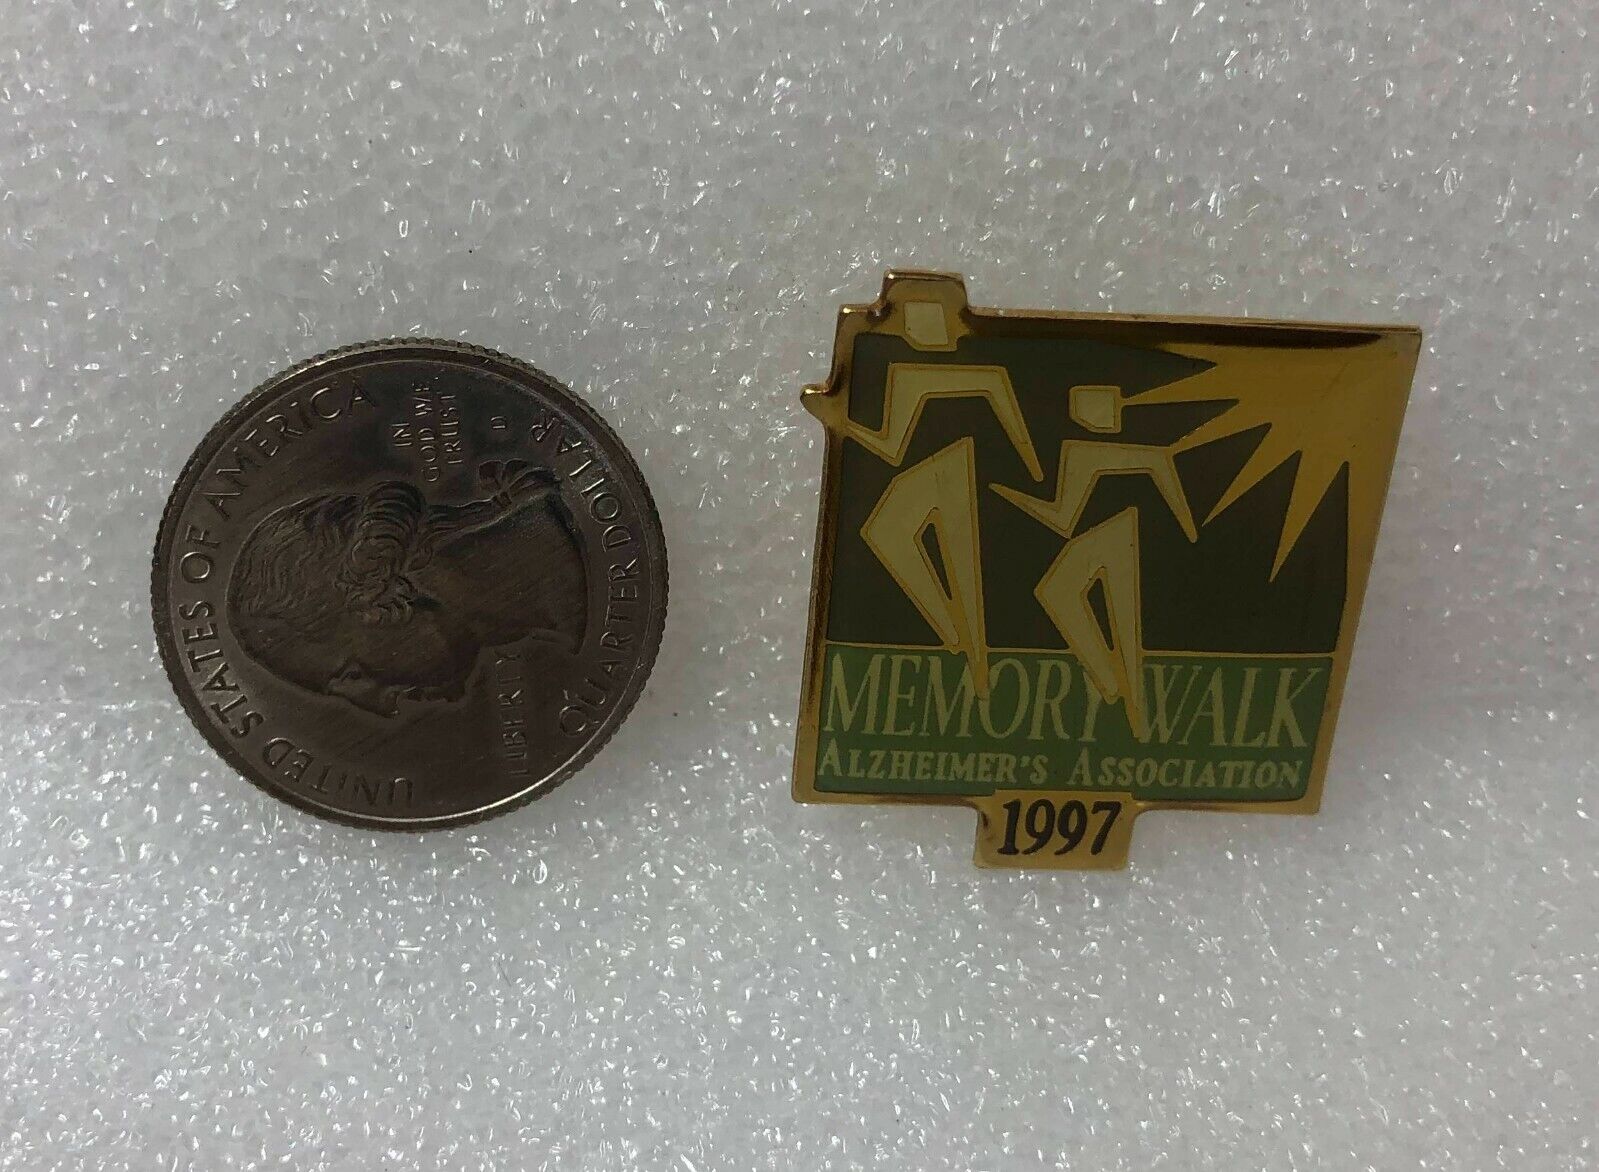 1997 Alzheimer's Association Memory Walk Pin